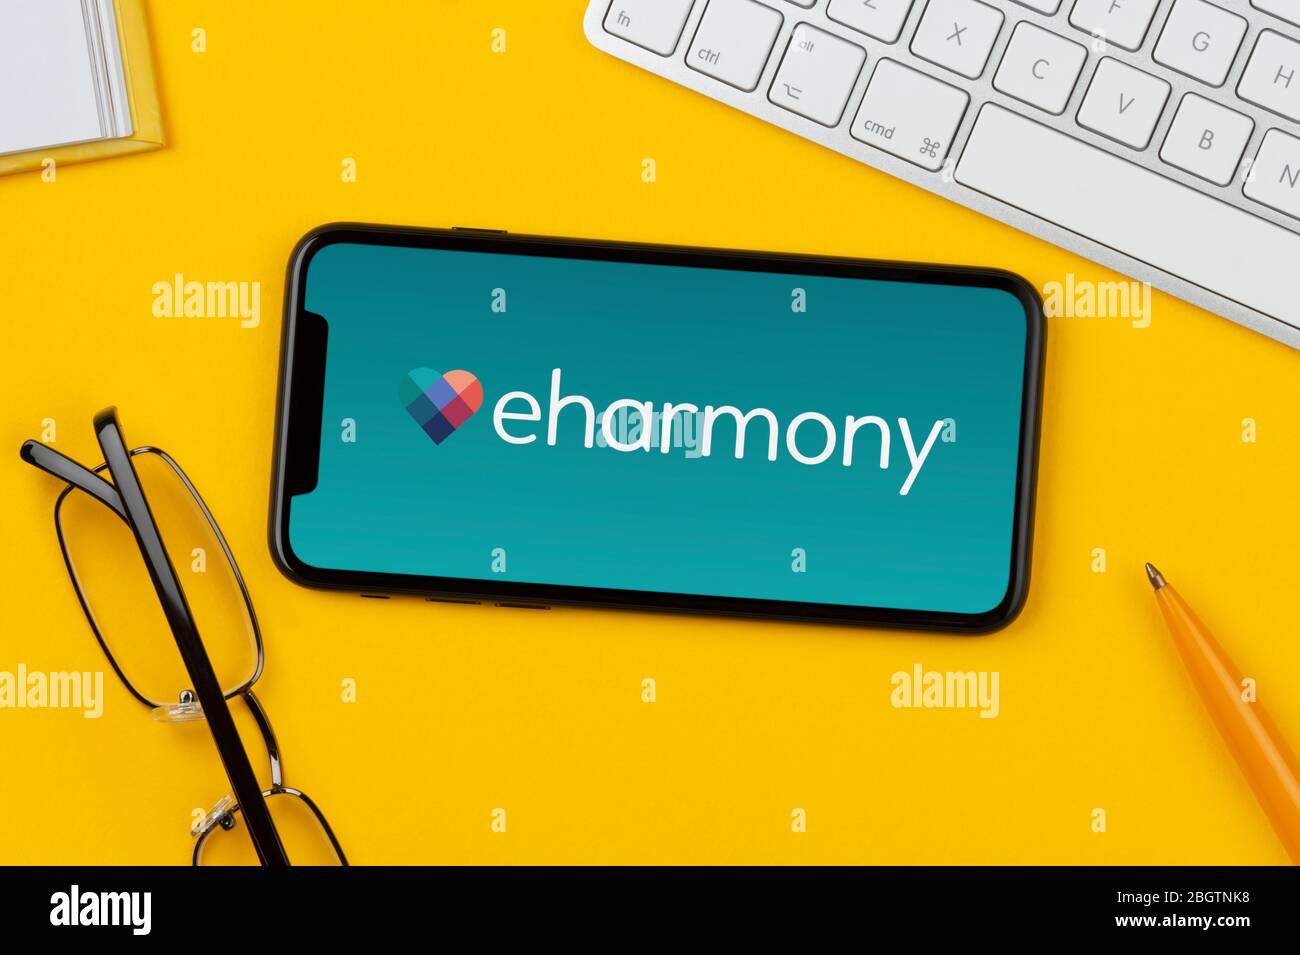 Un smartphone que muestra el logotipo de eHarmony descansa sobre un fondo amarillo junto con un teclado, gafas, lápiz y libro (sólo para uso editorial). Foto de stock